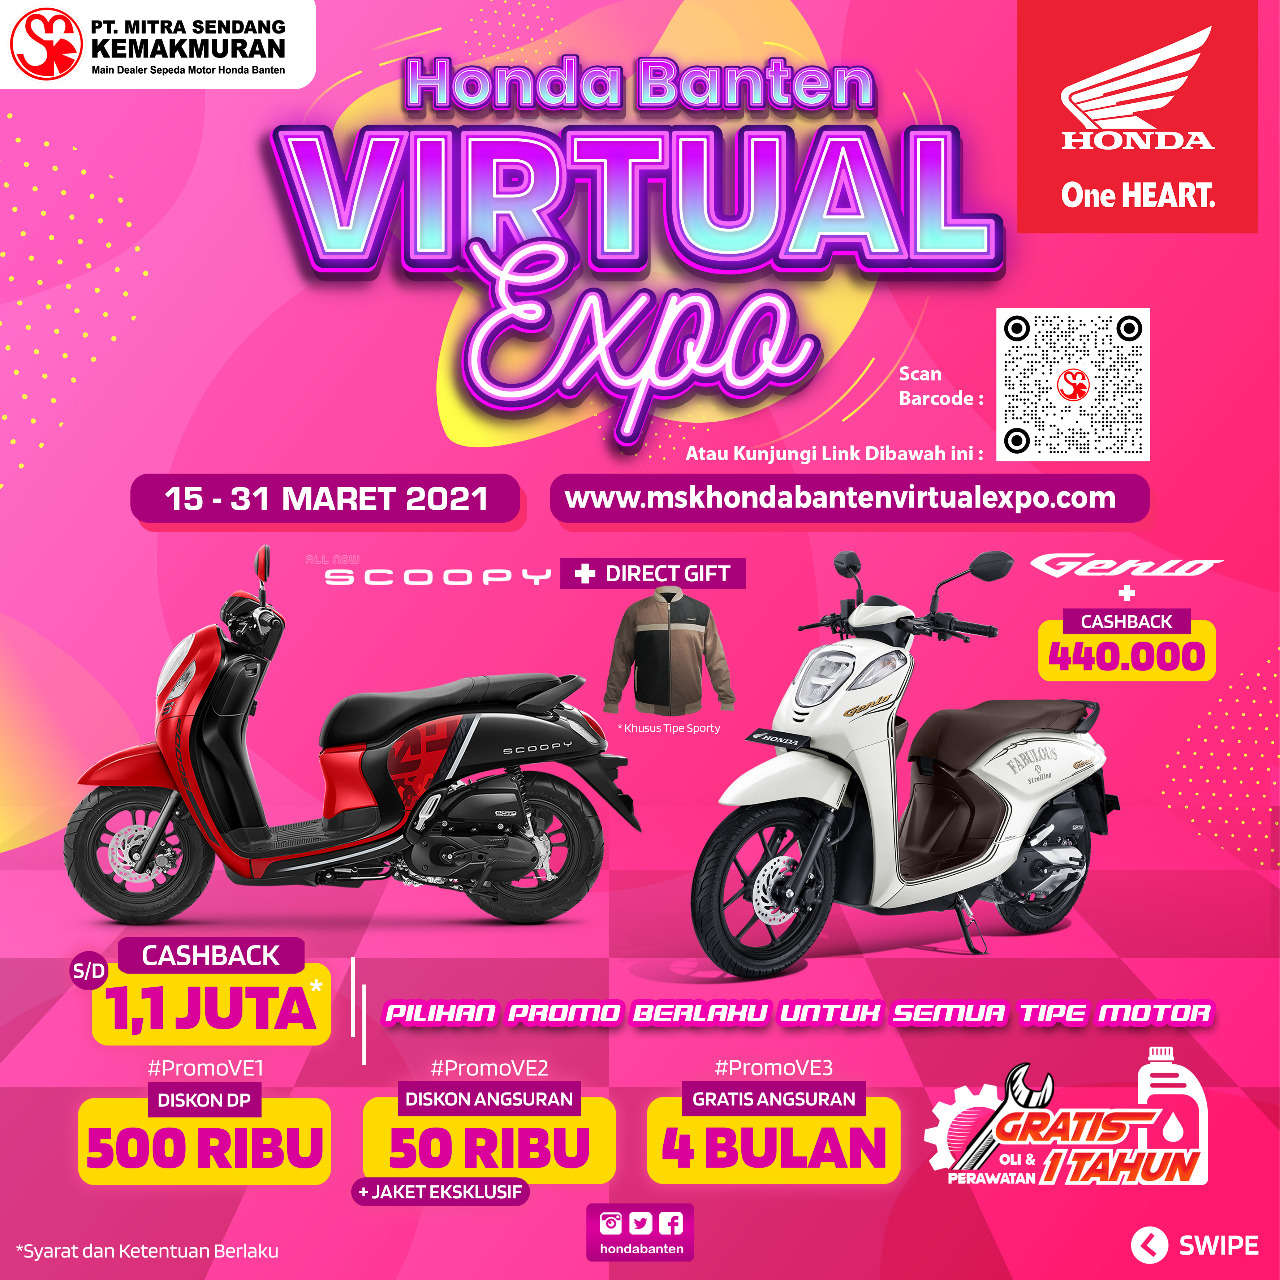 PT. Mitra Sendang Kemakmuran Ajak Konsumen Beli Sepeda Motor Honda Di Honda Banten Virtual Exhibition